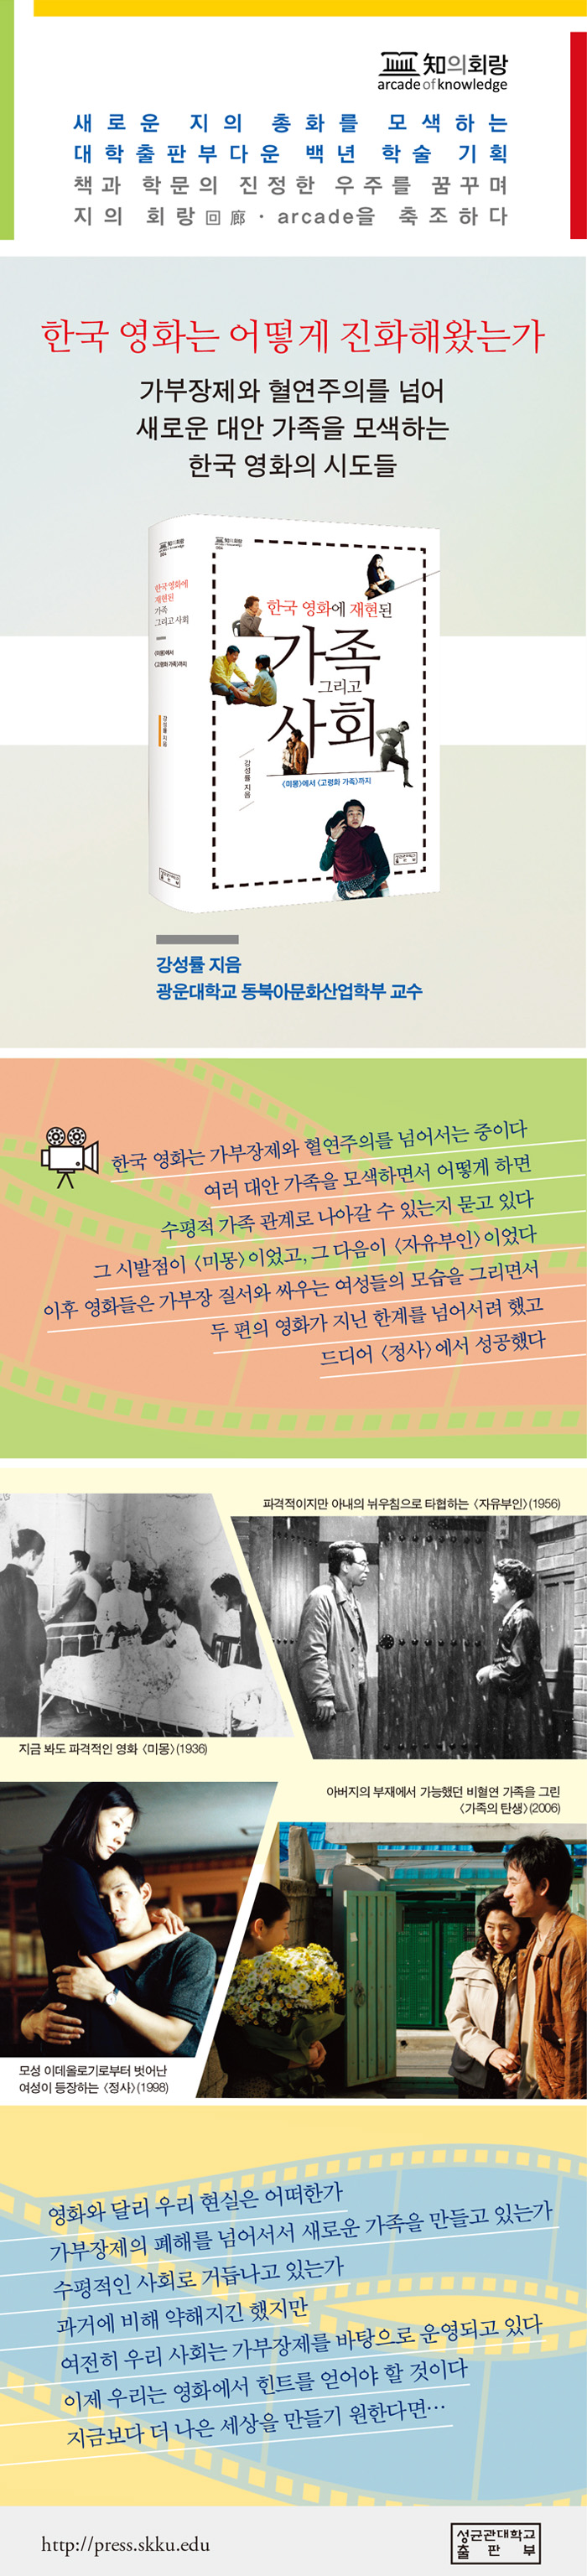 004_한국 영화 속 가족과 사회 홍보 이미지.jpg